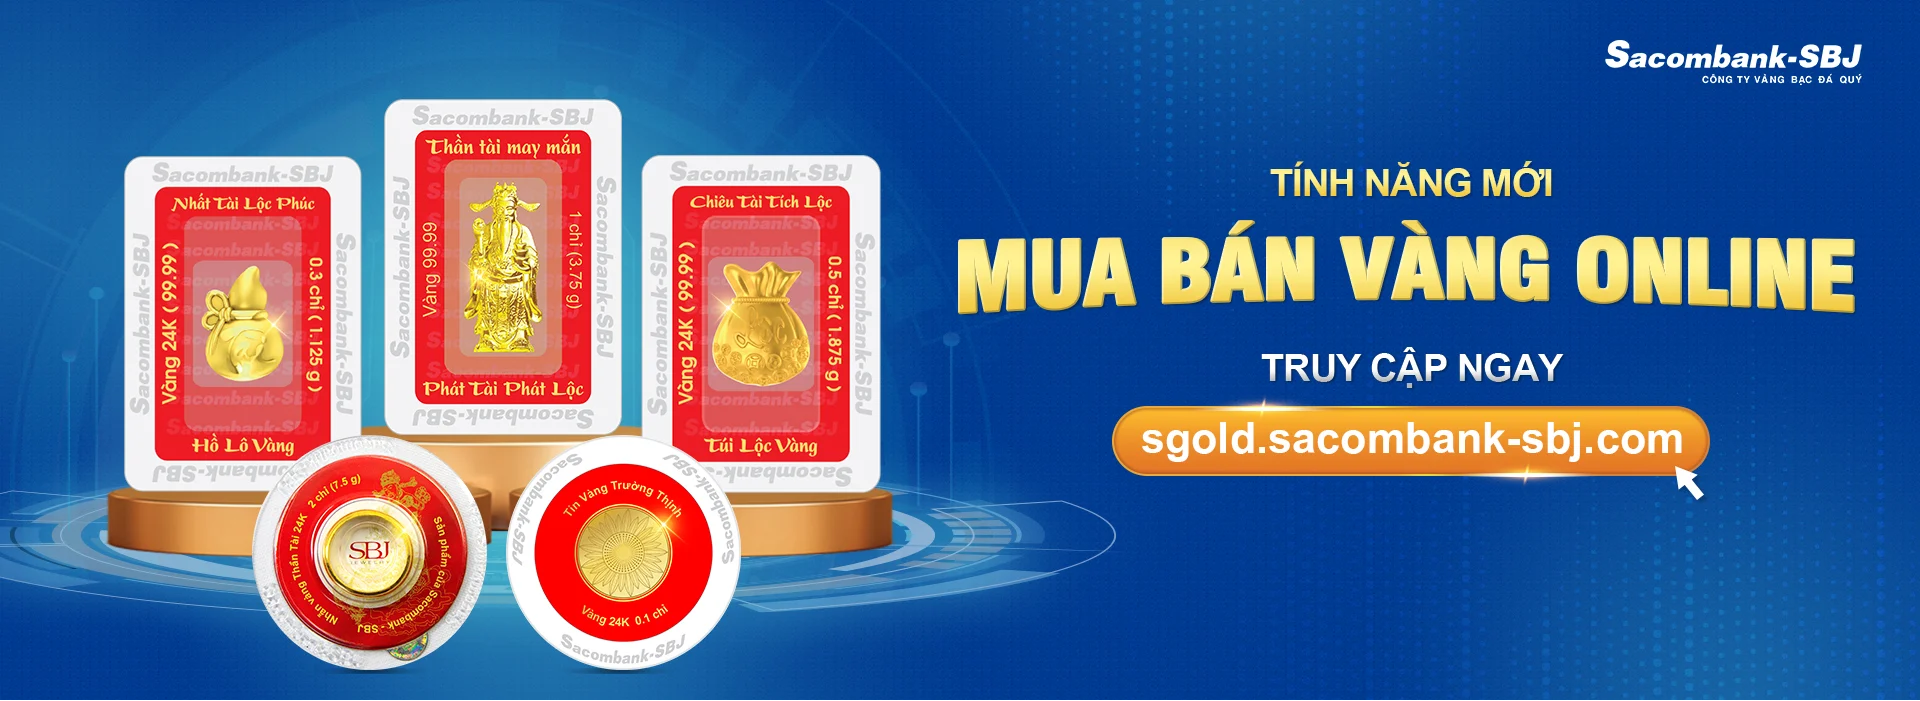 Mua/Bán Vàng Online SGold